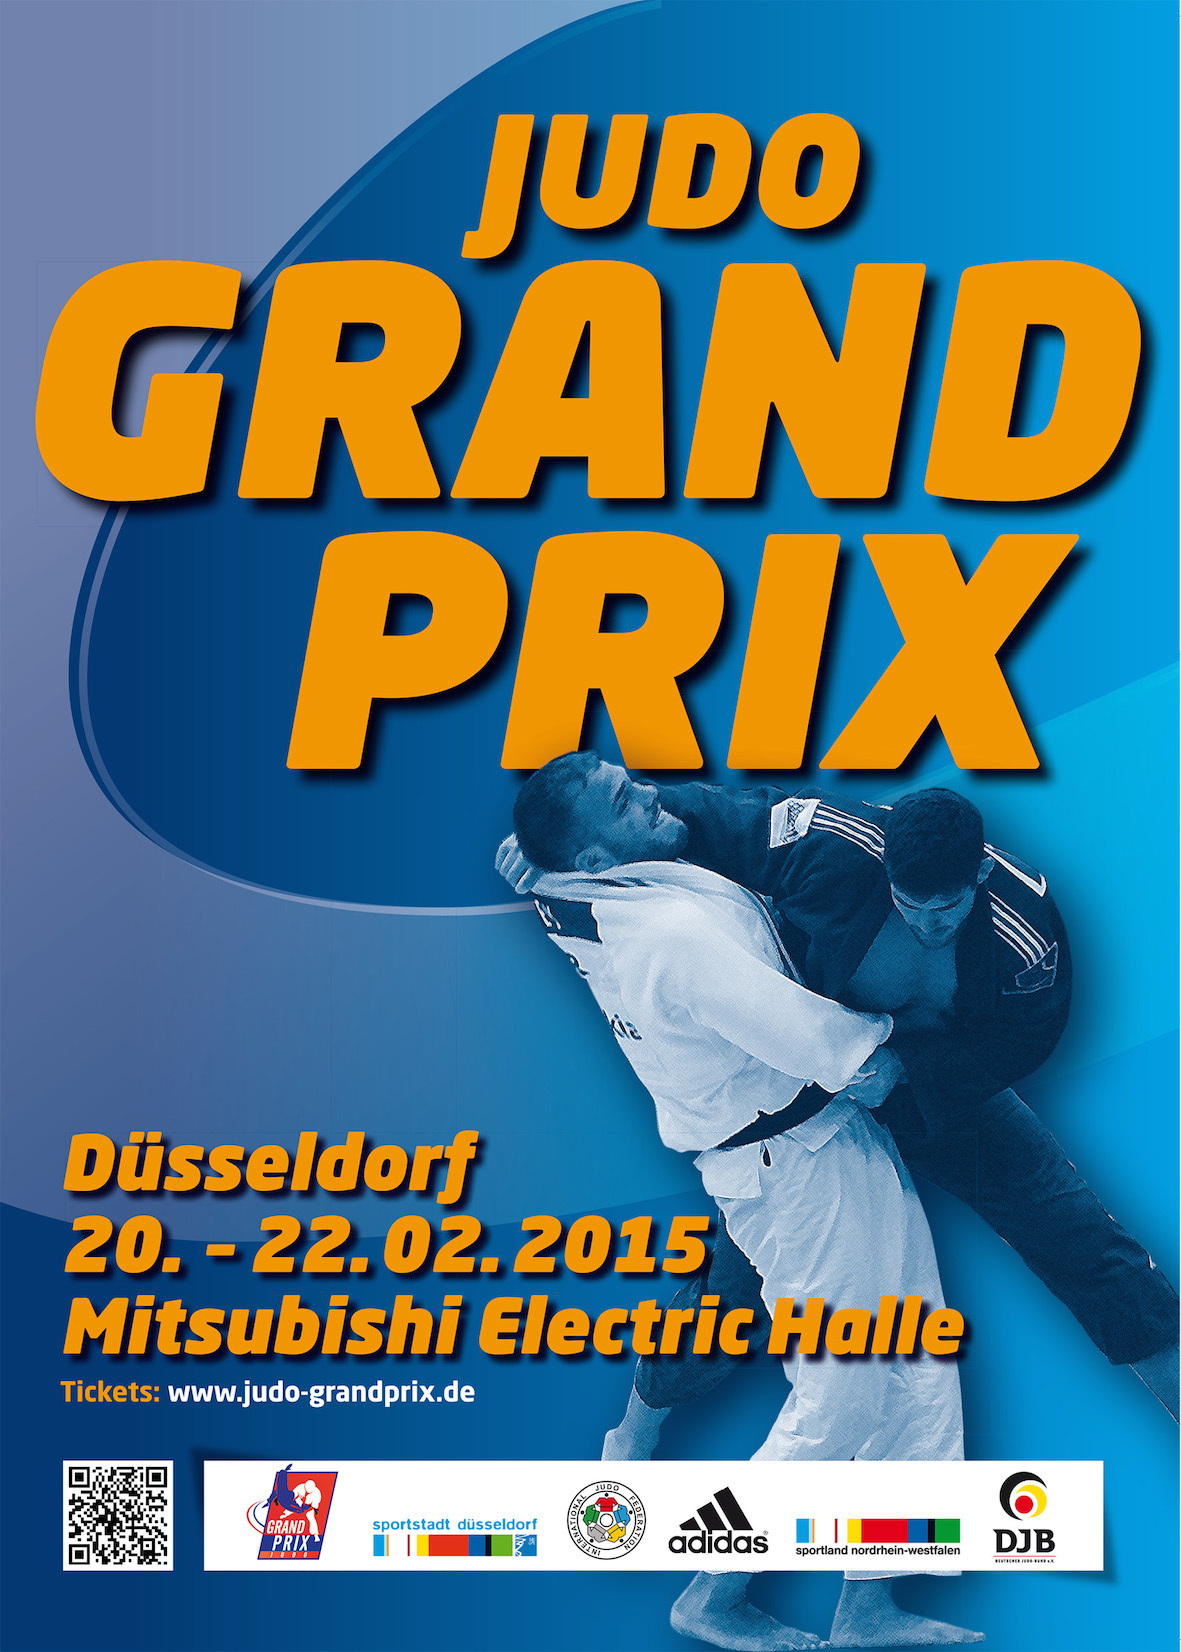 /immagini/Judo/2015/Dusseldorf_2015.jpg